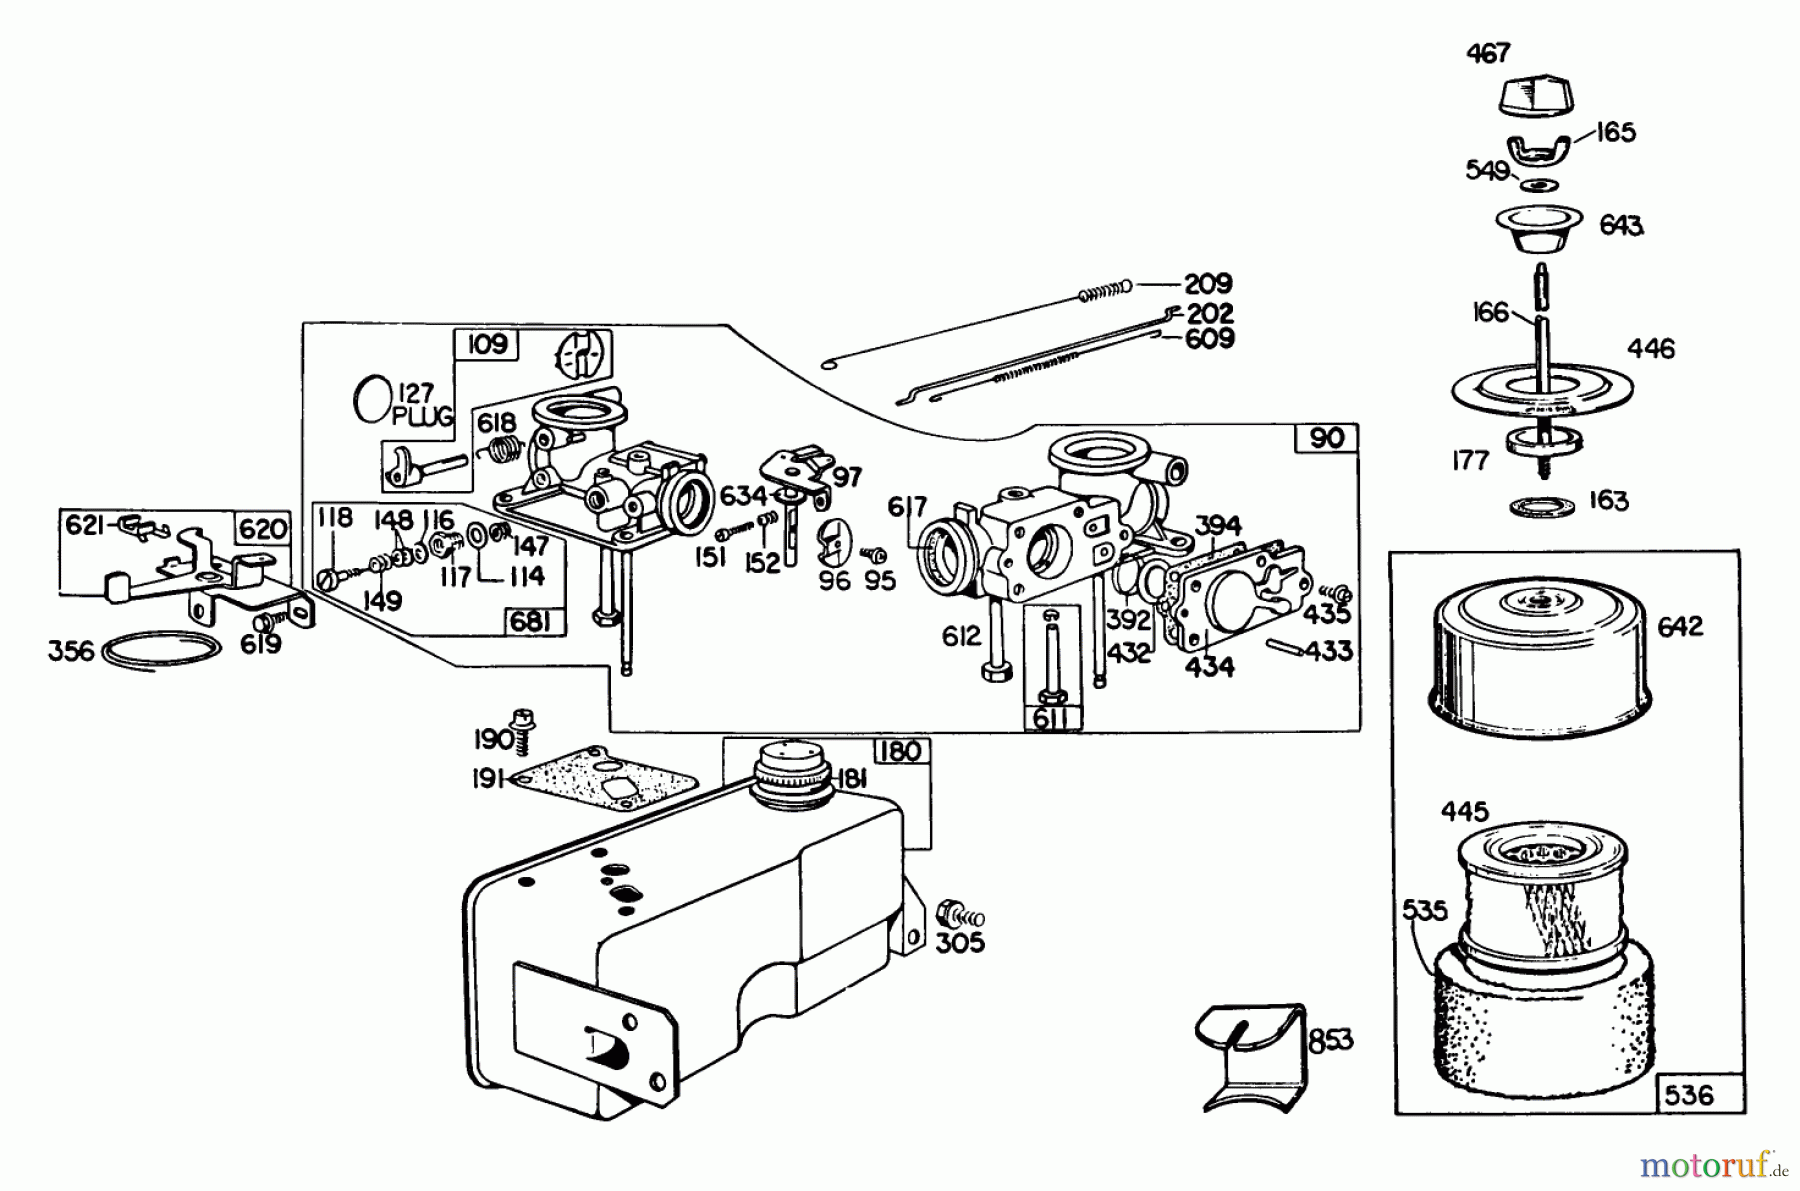  Toro Neu Mowers, Walk-Behind Seite 2 23022 - Toro Lawnmower, 1982 (2000001-2999999) ENGINE BRIGGS & STRATTON MODEL 130902-0543-01 #1